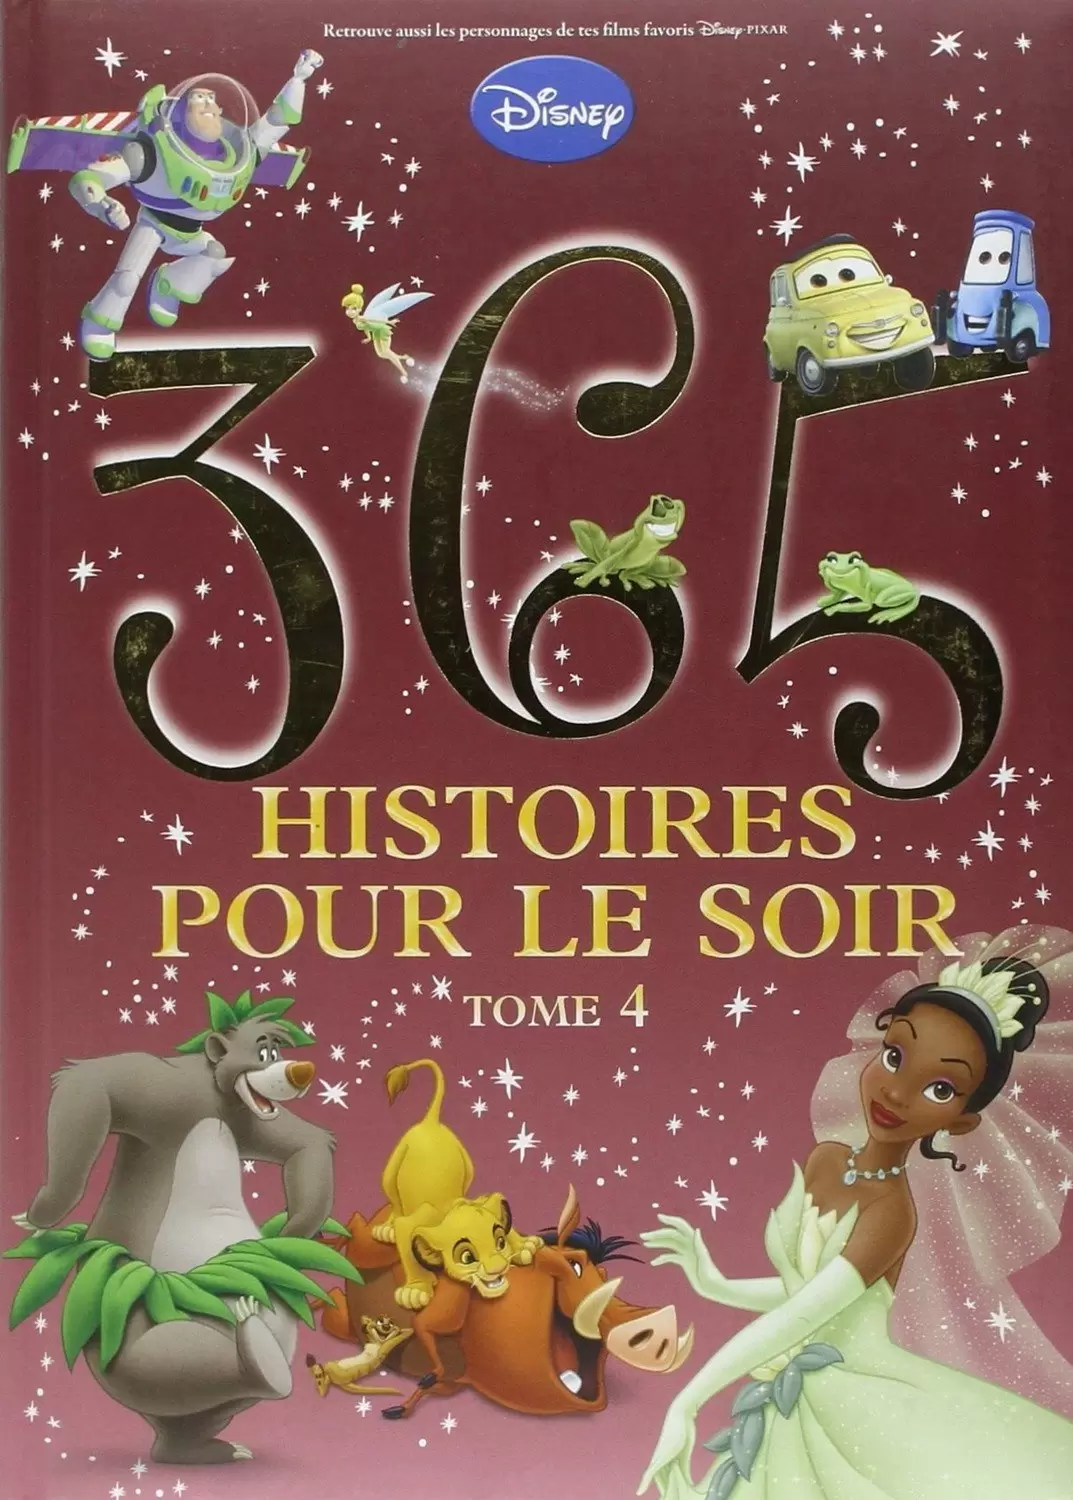 Disney - Histoires pour le soir et pour la semaine - 365 Histoires pour le soir - Tome 4